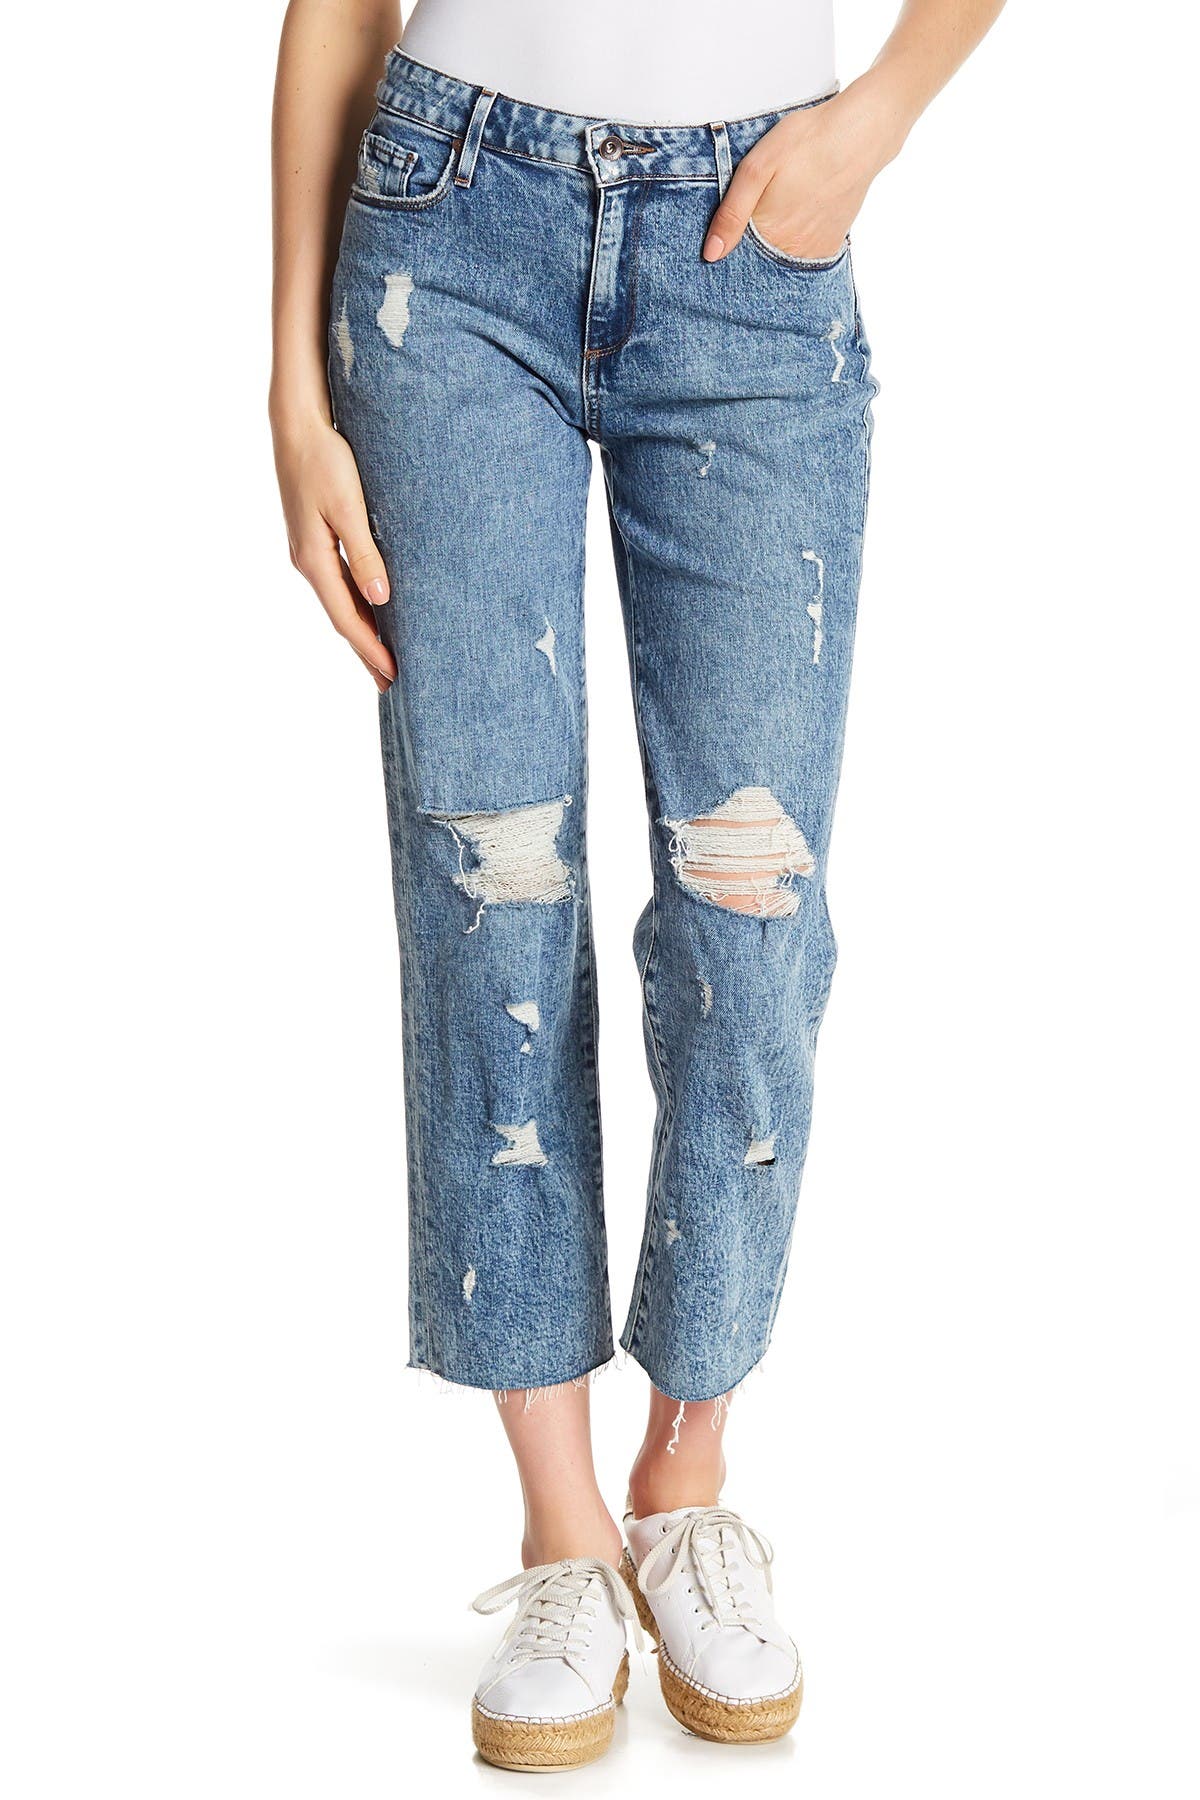 paige noella straight leg jeans